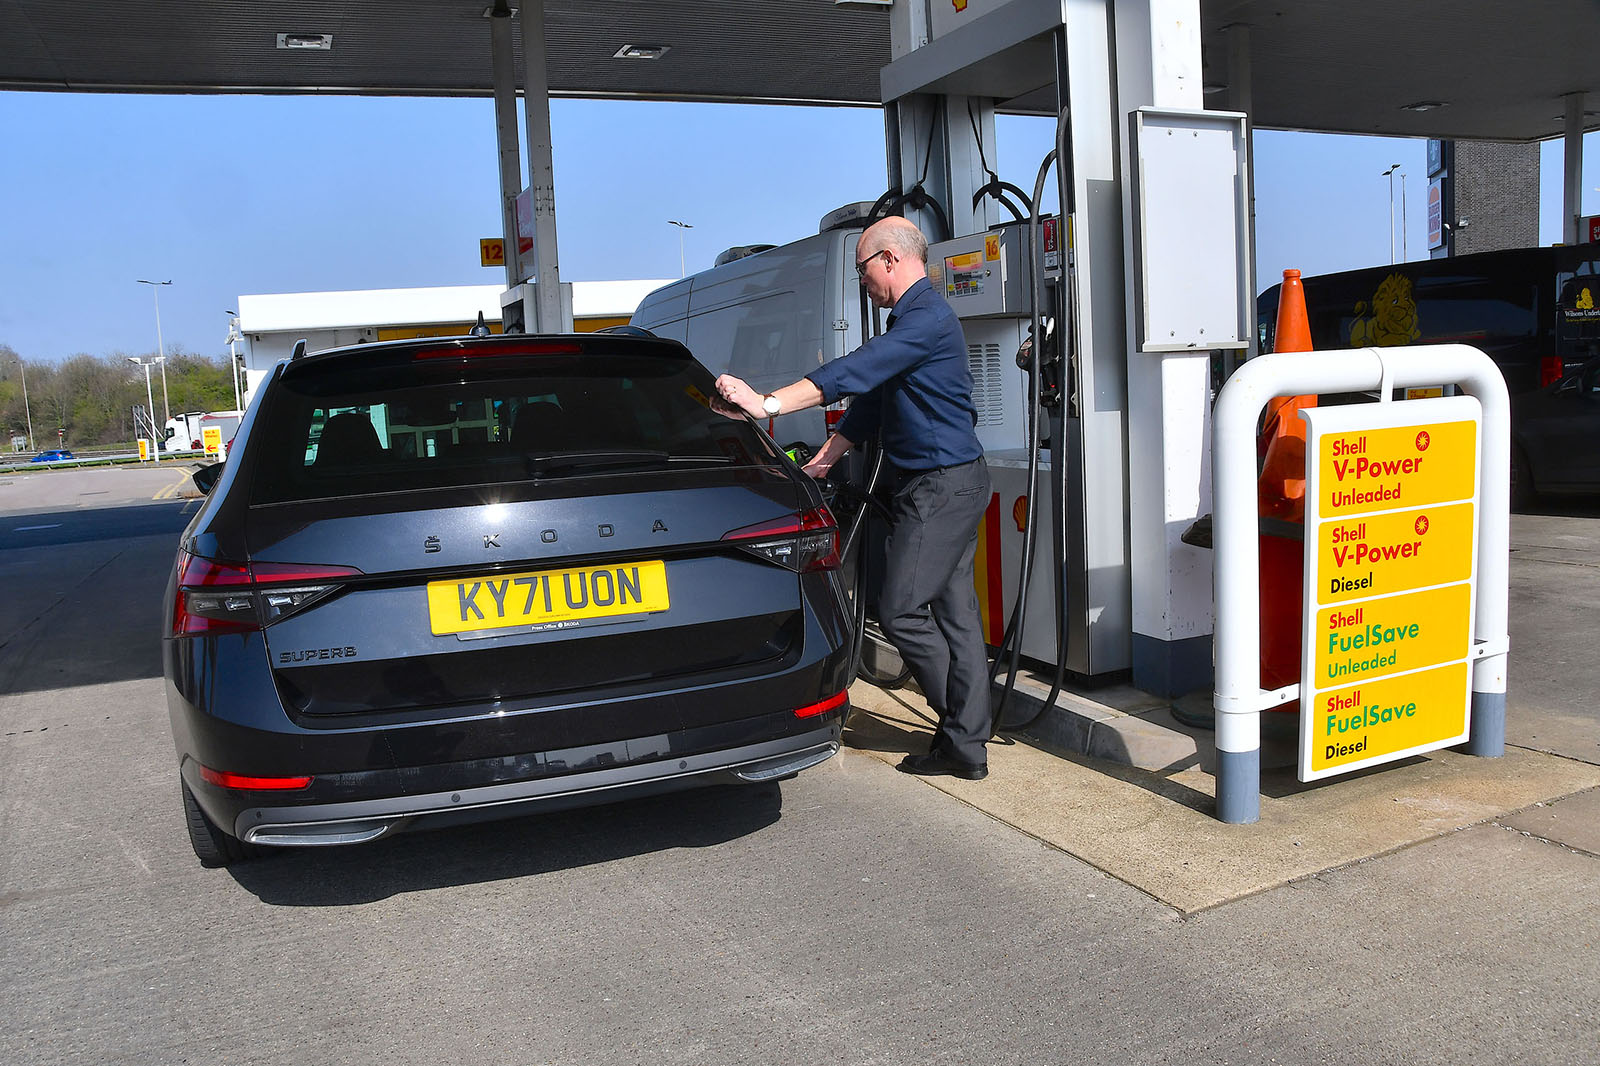 Britse brandstofprijzen: de kosten van benzine en diesel stijgen “ongerechtvaardigd”